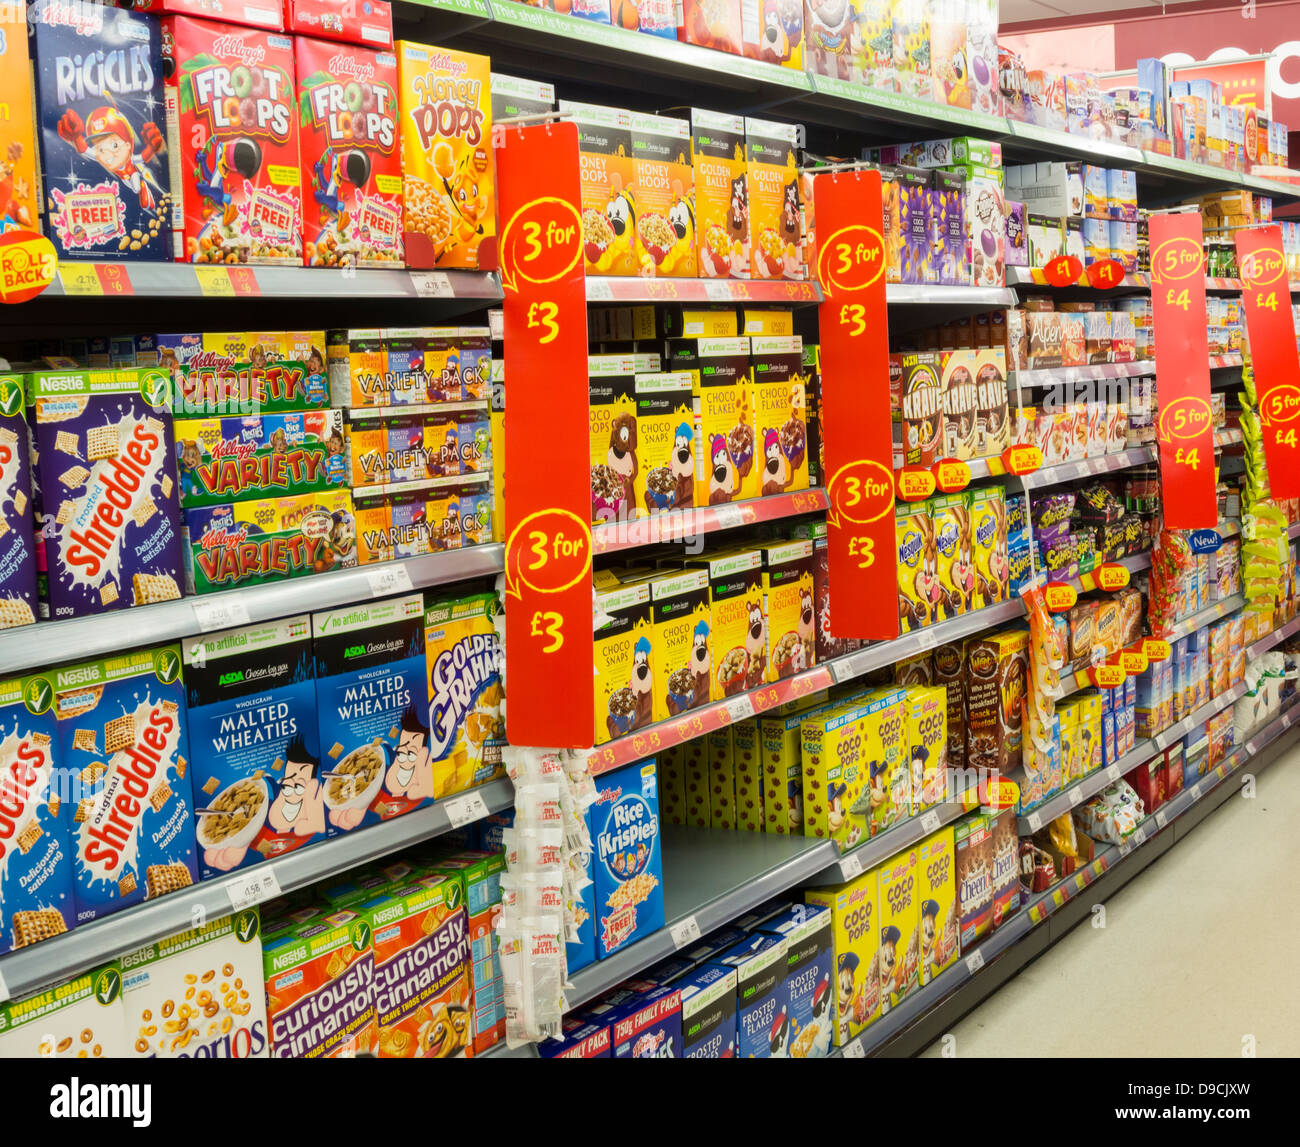 Breakfast Cereals in Asda supermarket. England, UK Stock Photo